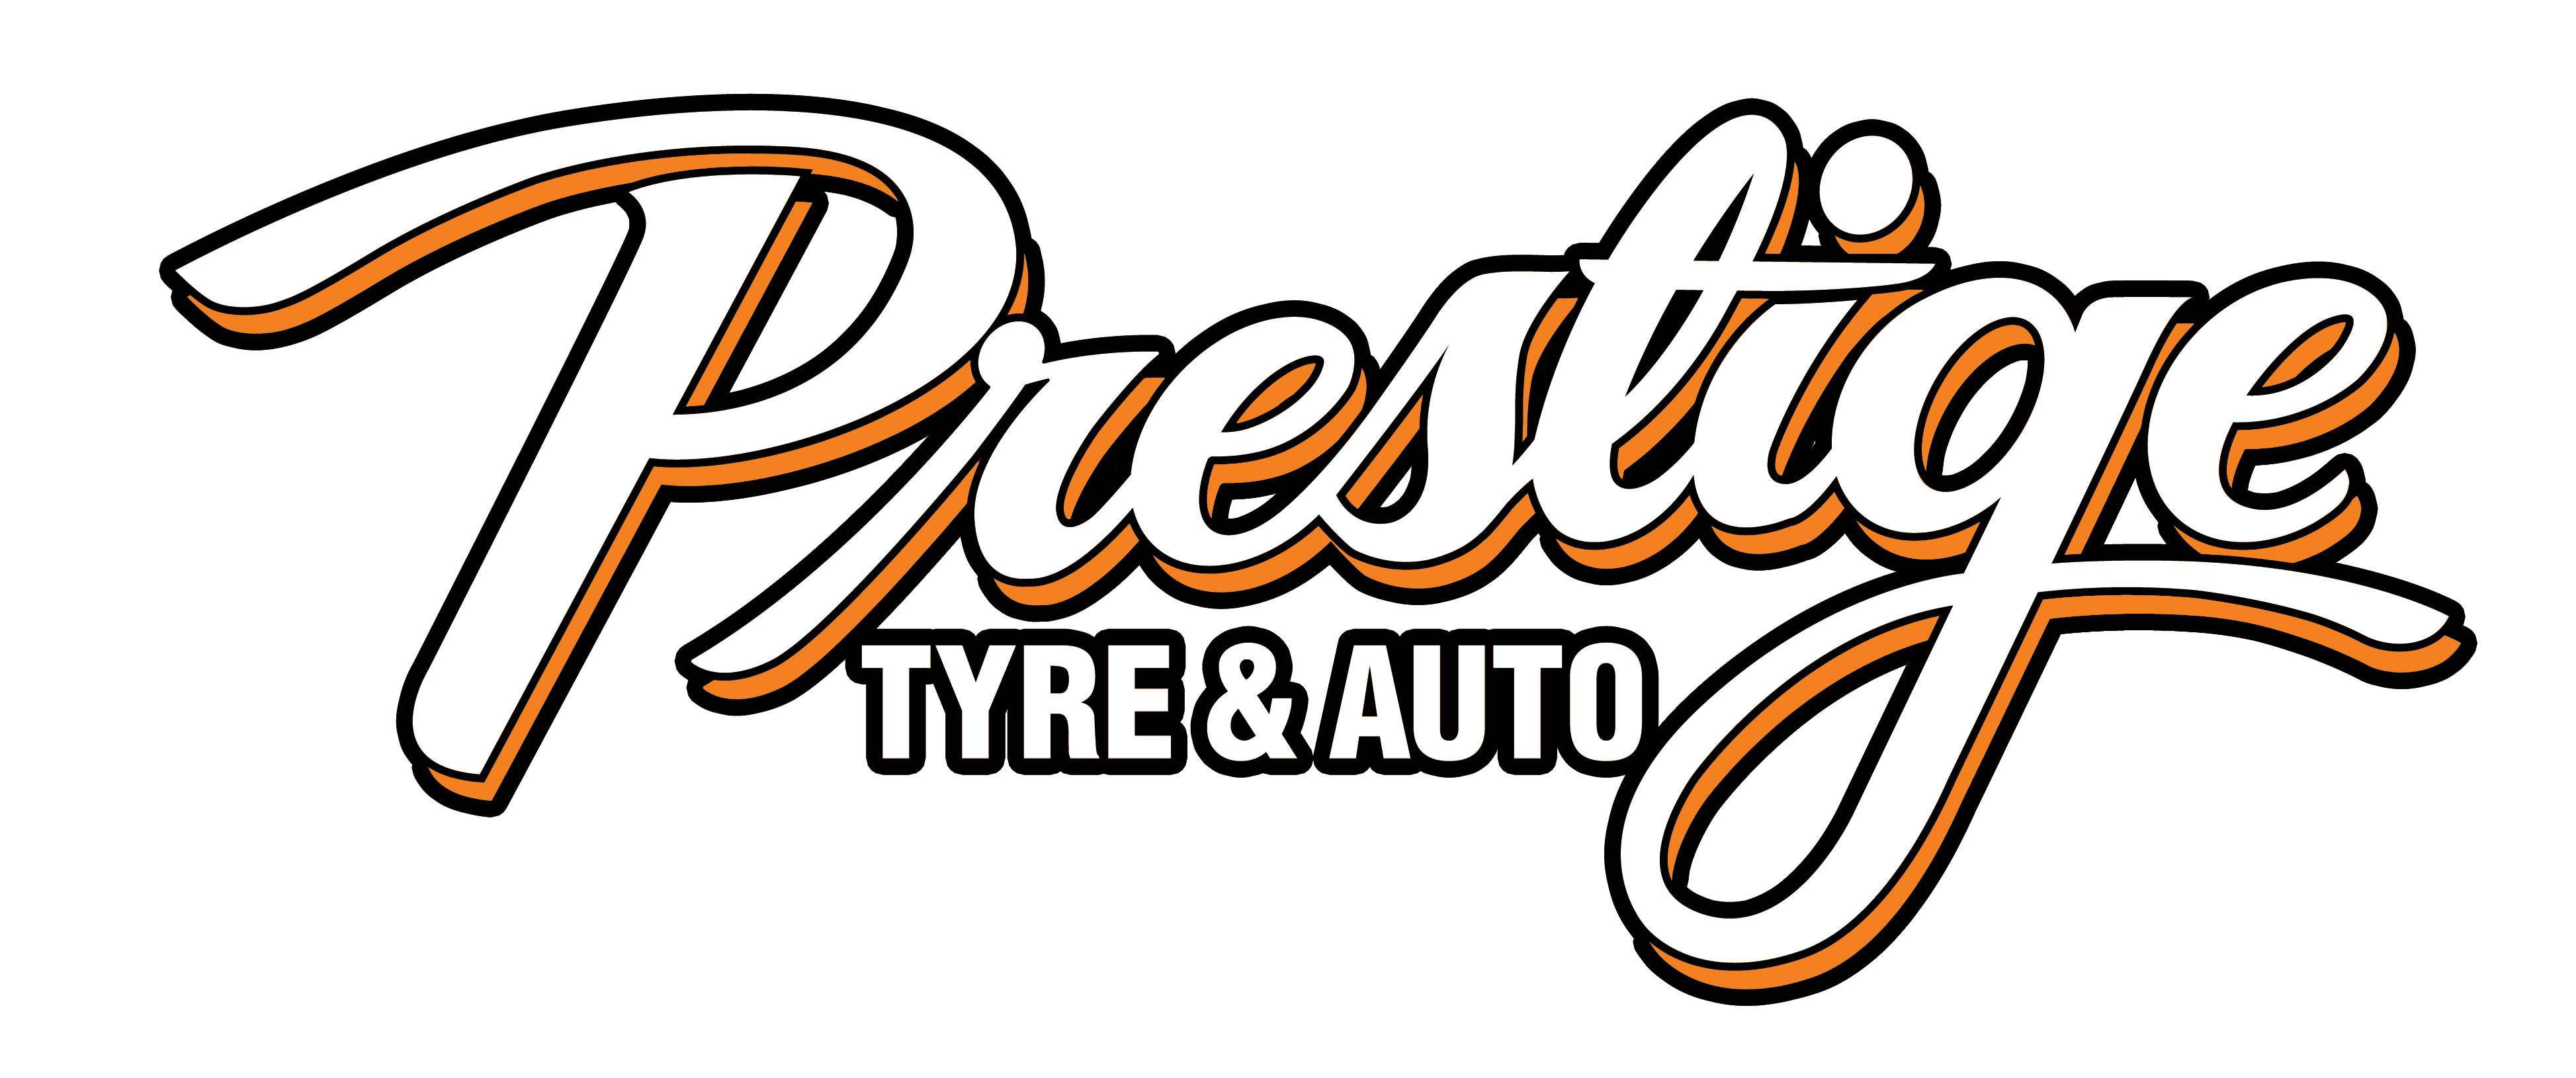 Prestige Tyre and Auto Service